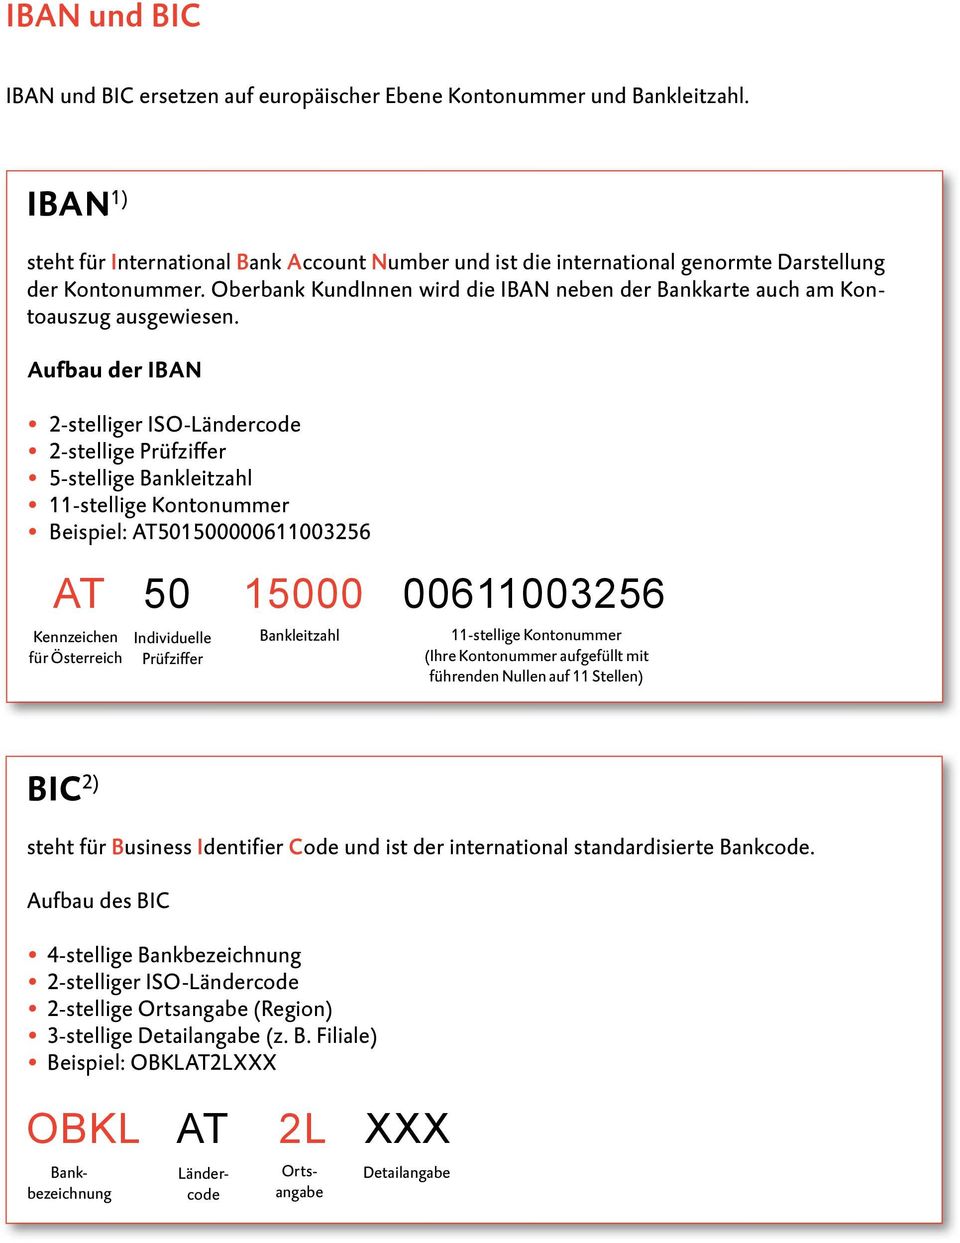 Oberbank KundInnen wird die IBAN neben der Bankkarte auch am Kontoauszug ausgewiesen.